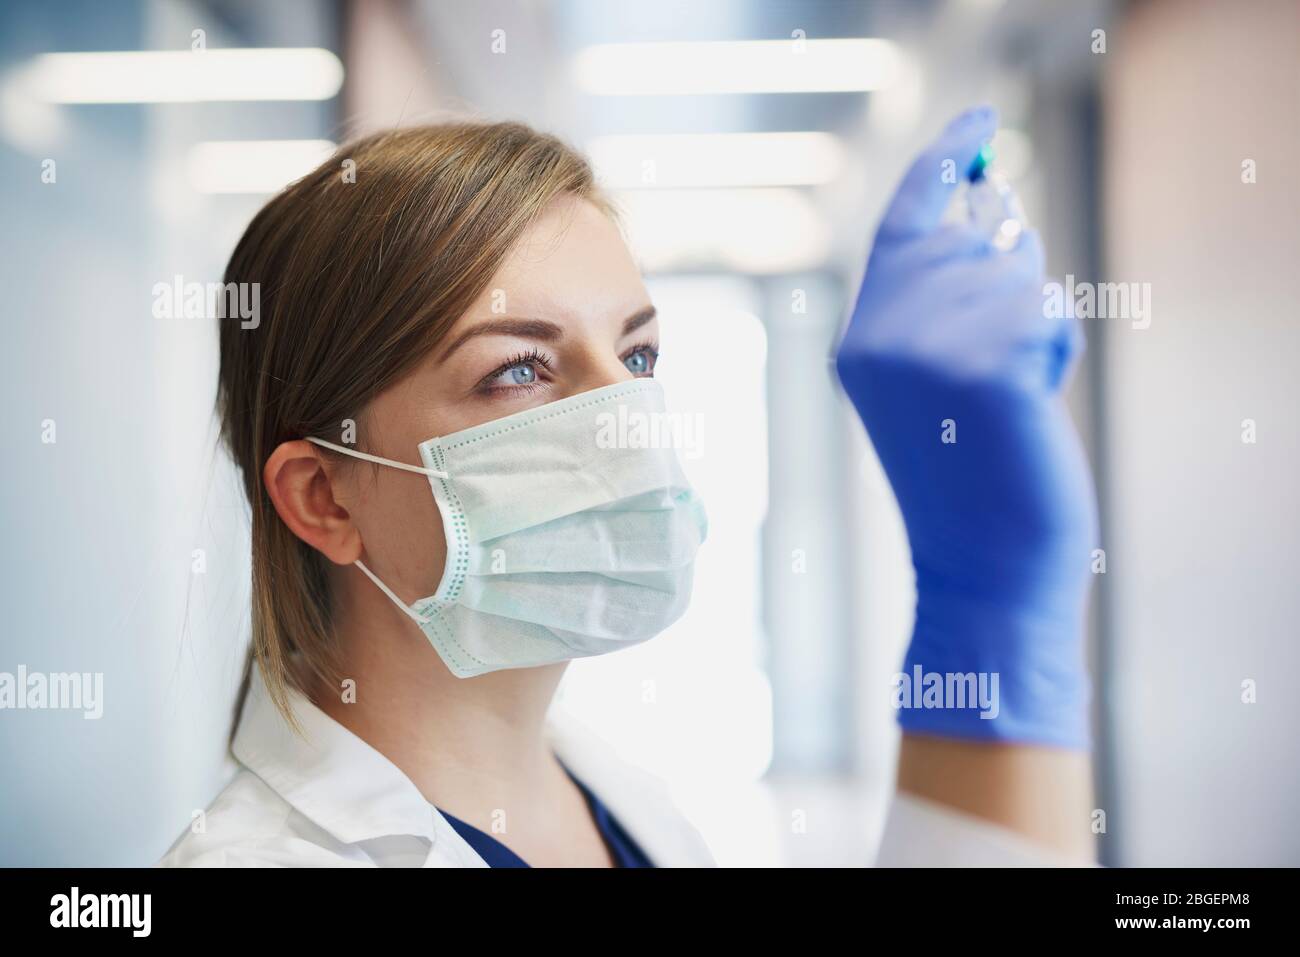 Arzt in Schutzmaske mit einem Ampulle in der Hand Stockfoto